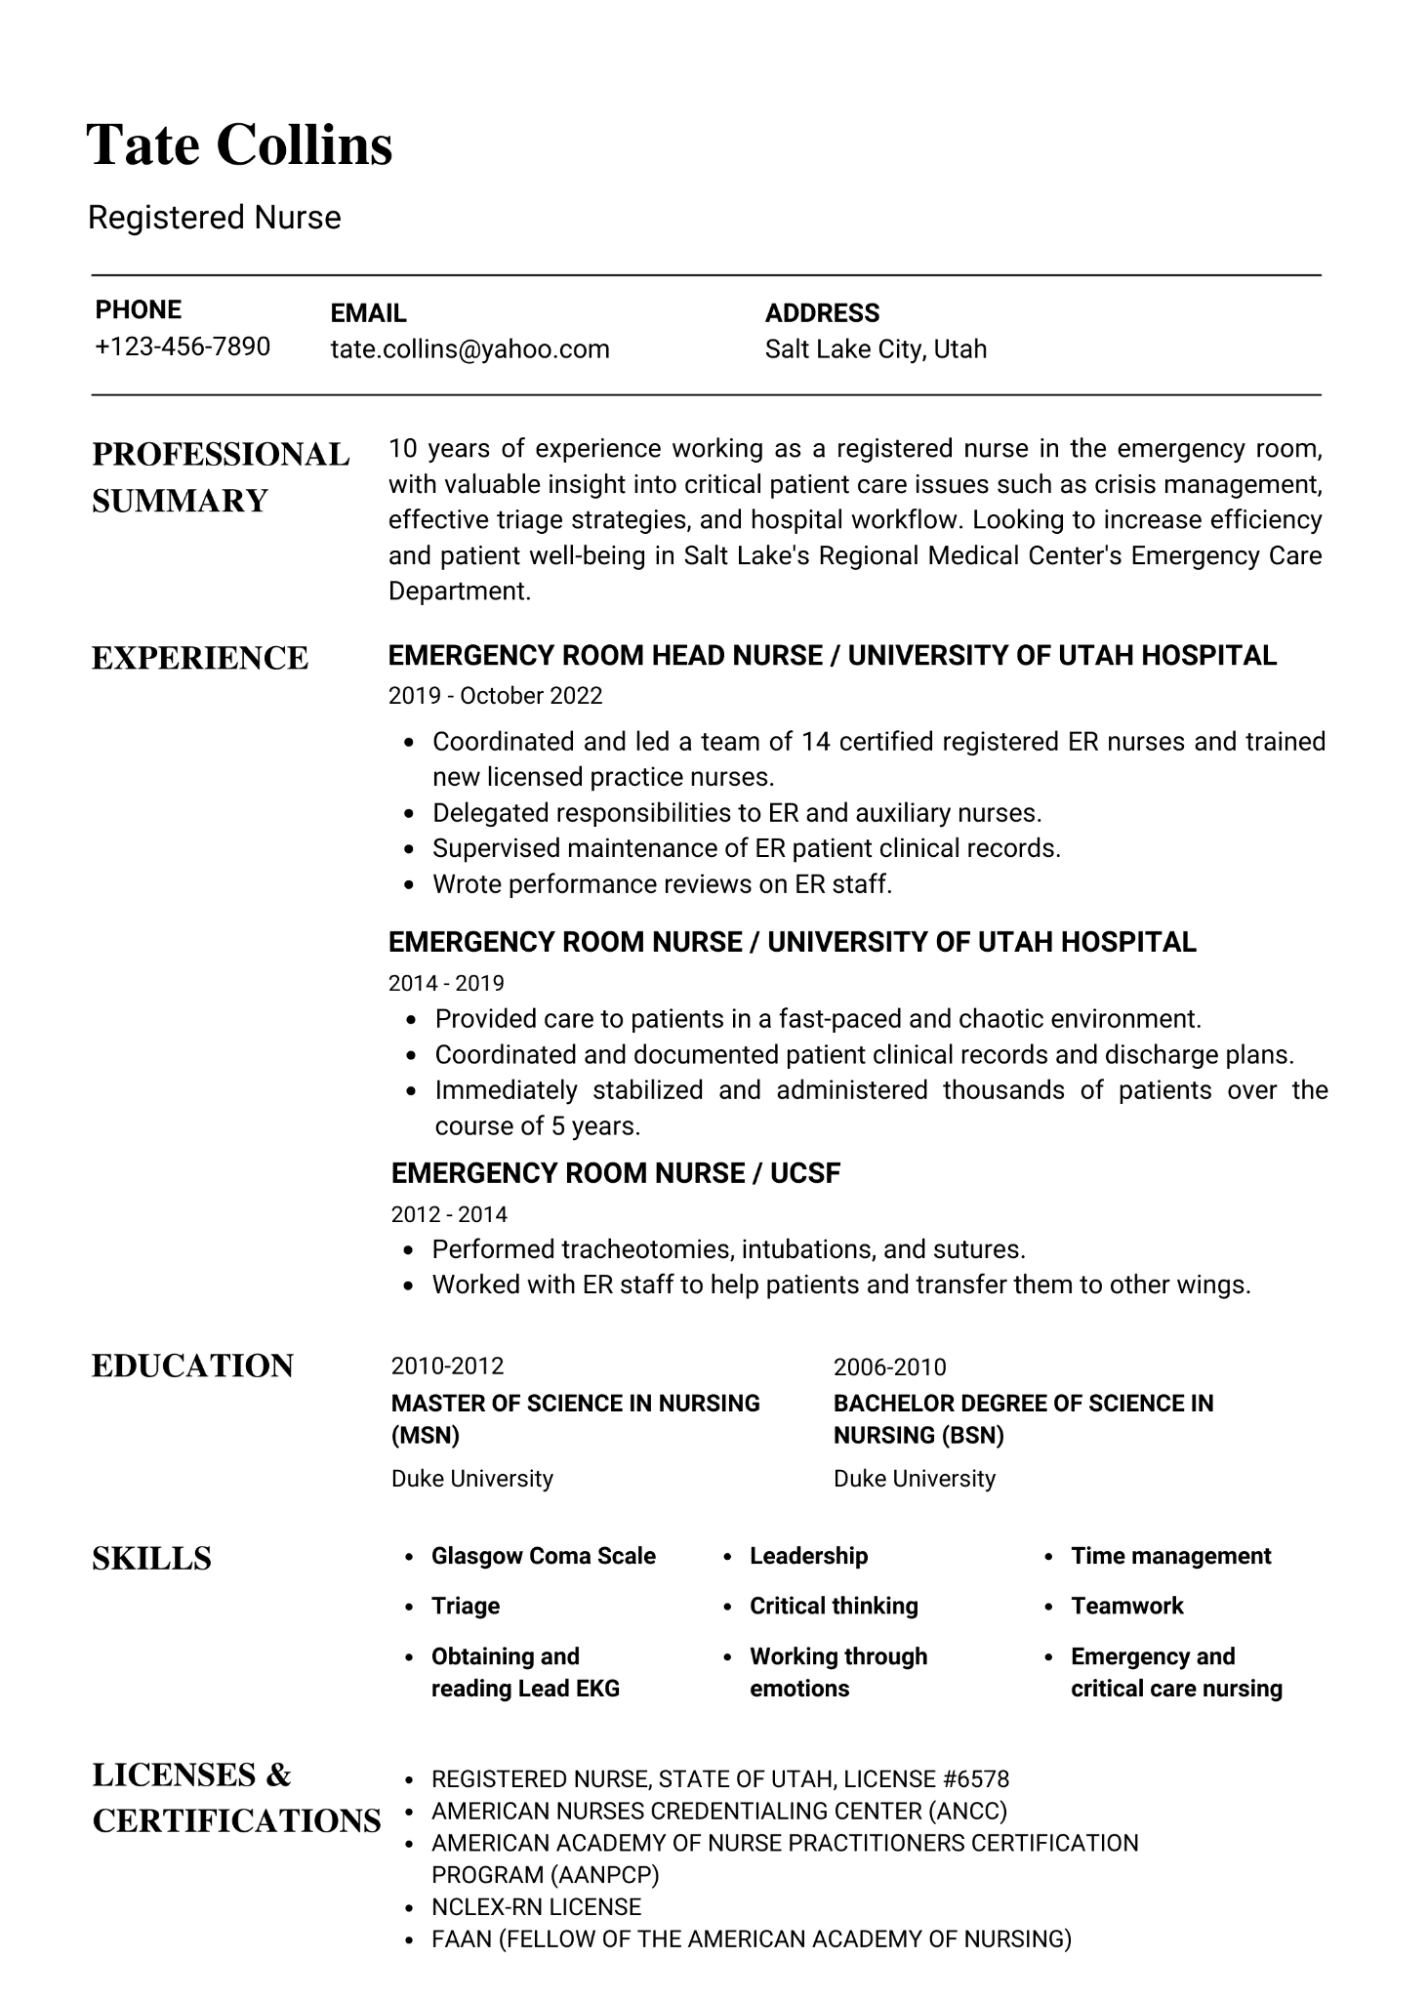 Nursing resume example